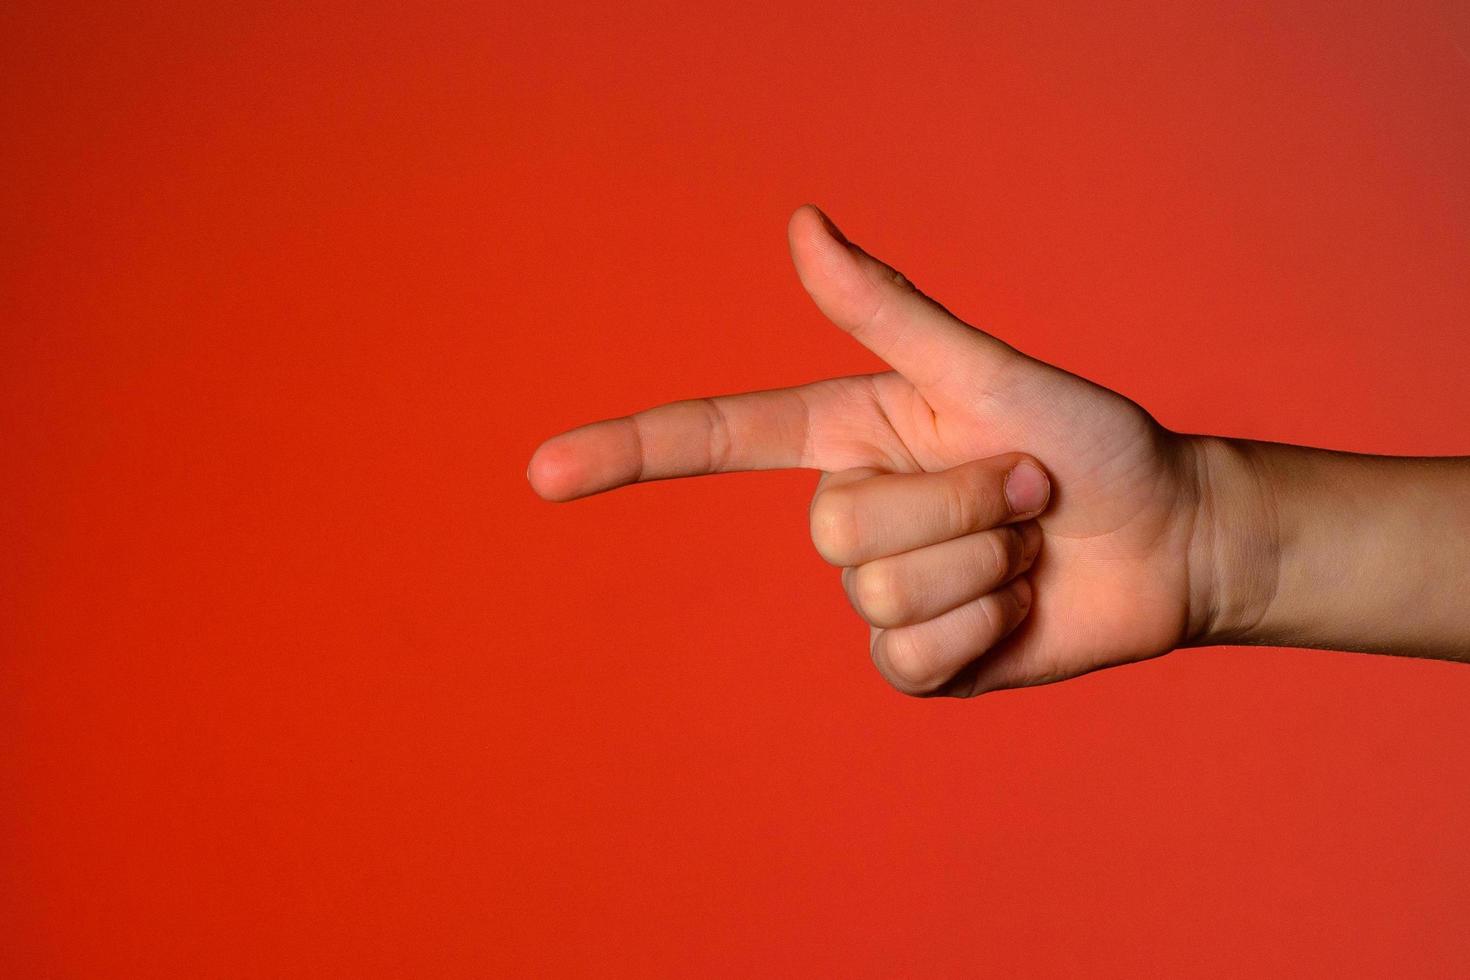 menschliche hand mit gefalteten fingern, zeigt einen zeigefinger, der eine pistole symbolisiert, isoliert auf rotem hintergrund foto